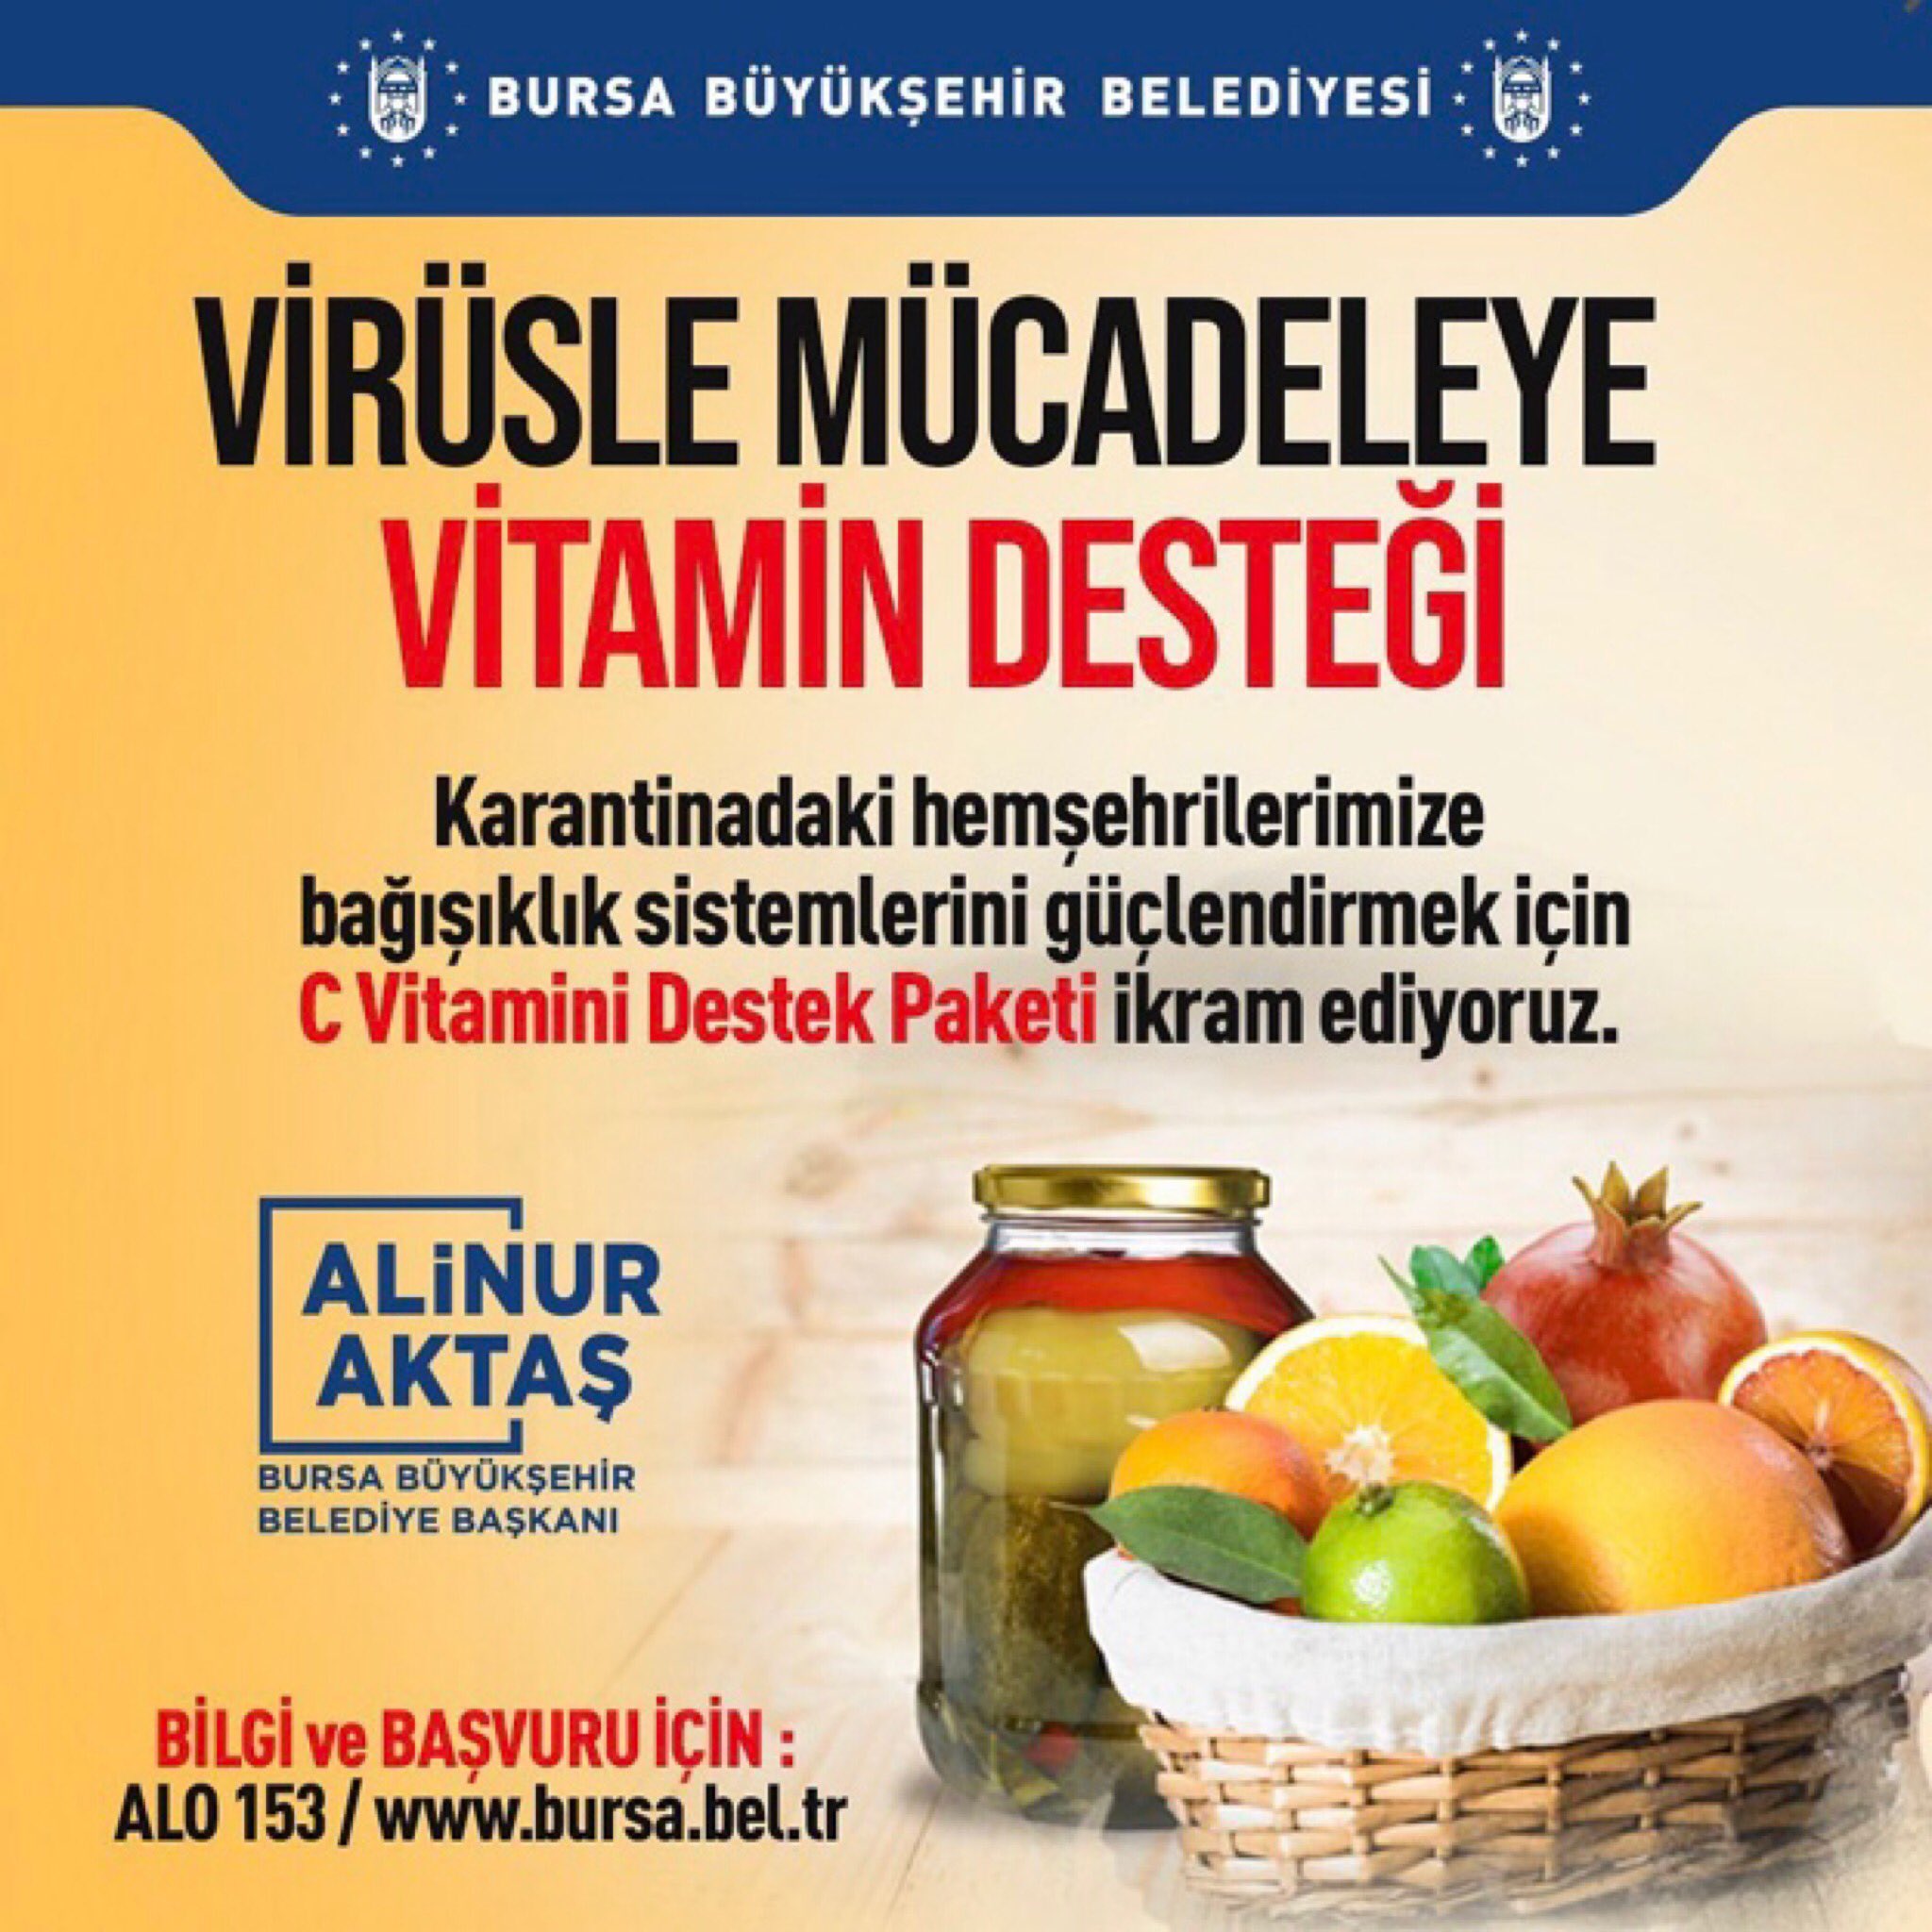 بلدية بورصة التركية تبدأ بتوزيع "سلة الفيتامينات"